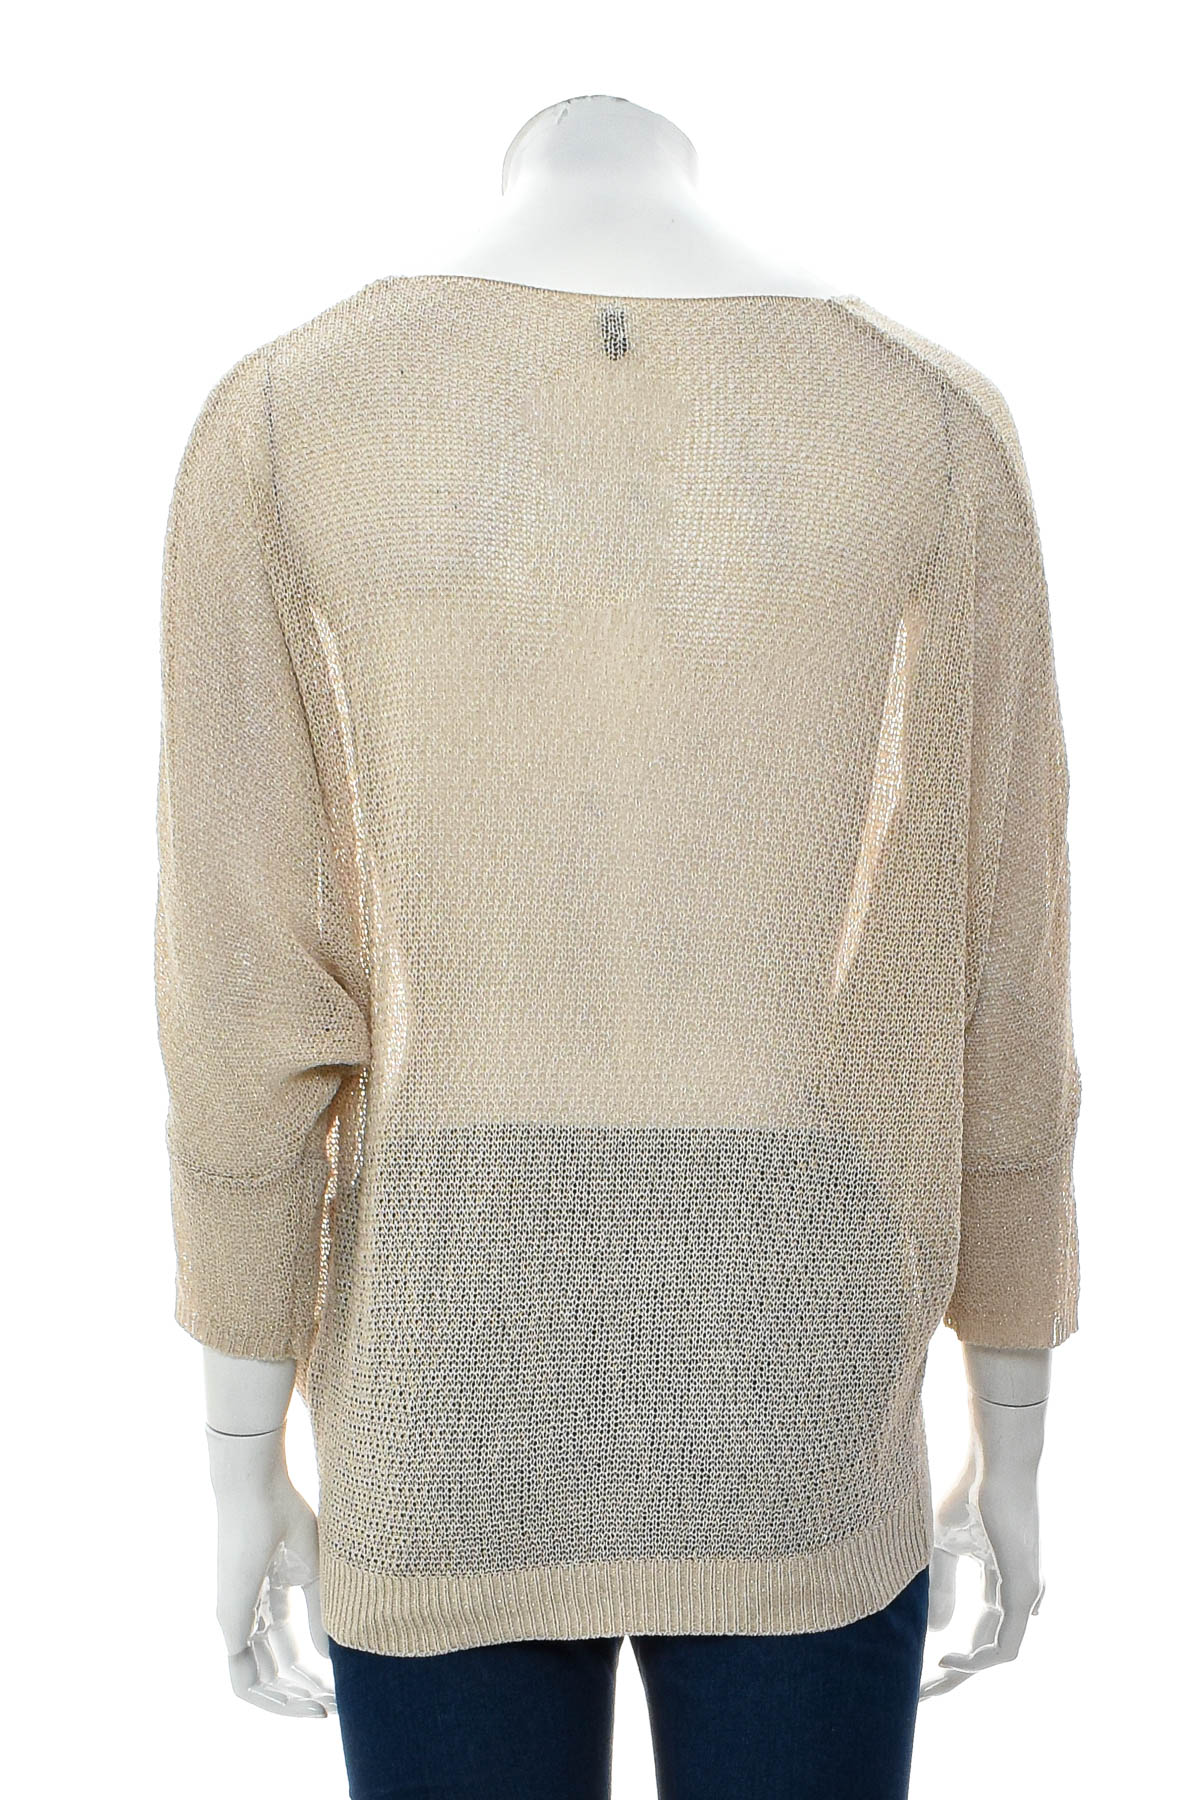 Women's sweater - Stile Benetton - 1